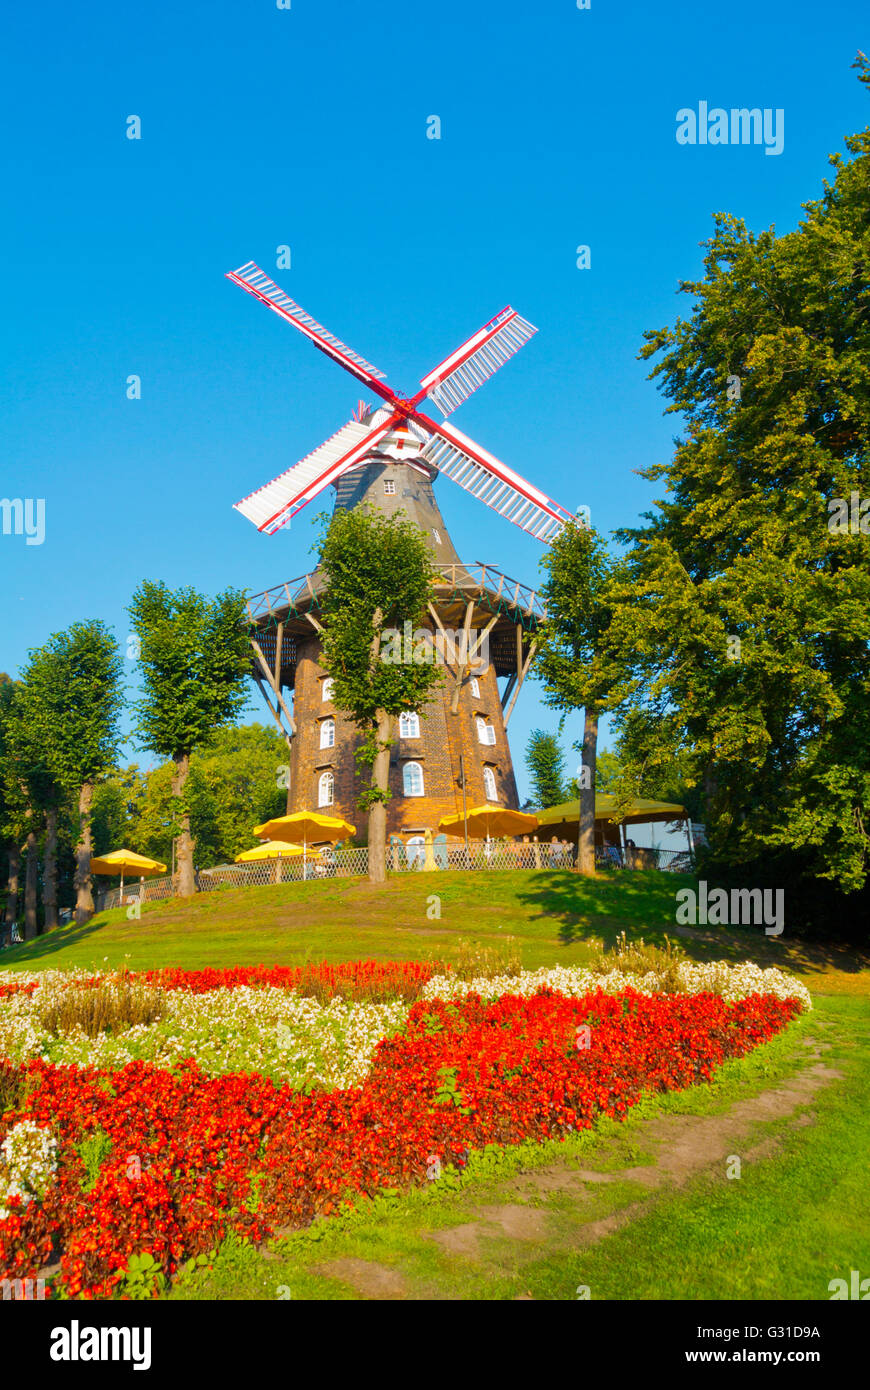 Mühle am Wall, le moulin à vent avec café, parc Wallanlagen, le centre de Brême, Allemagne Banque D'Images